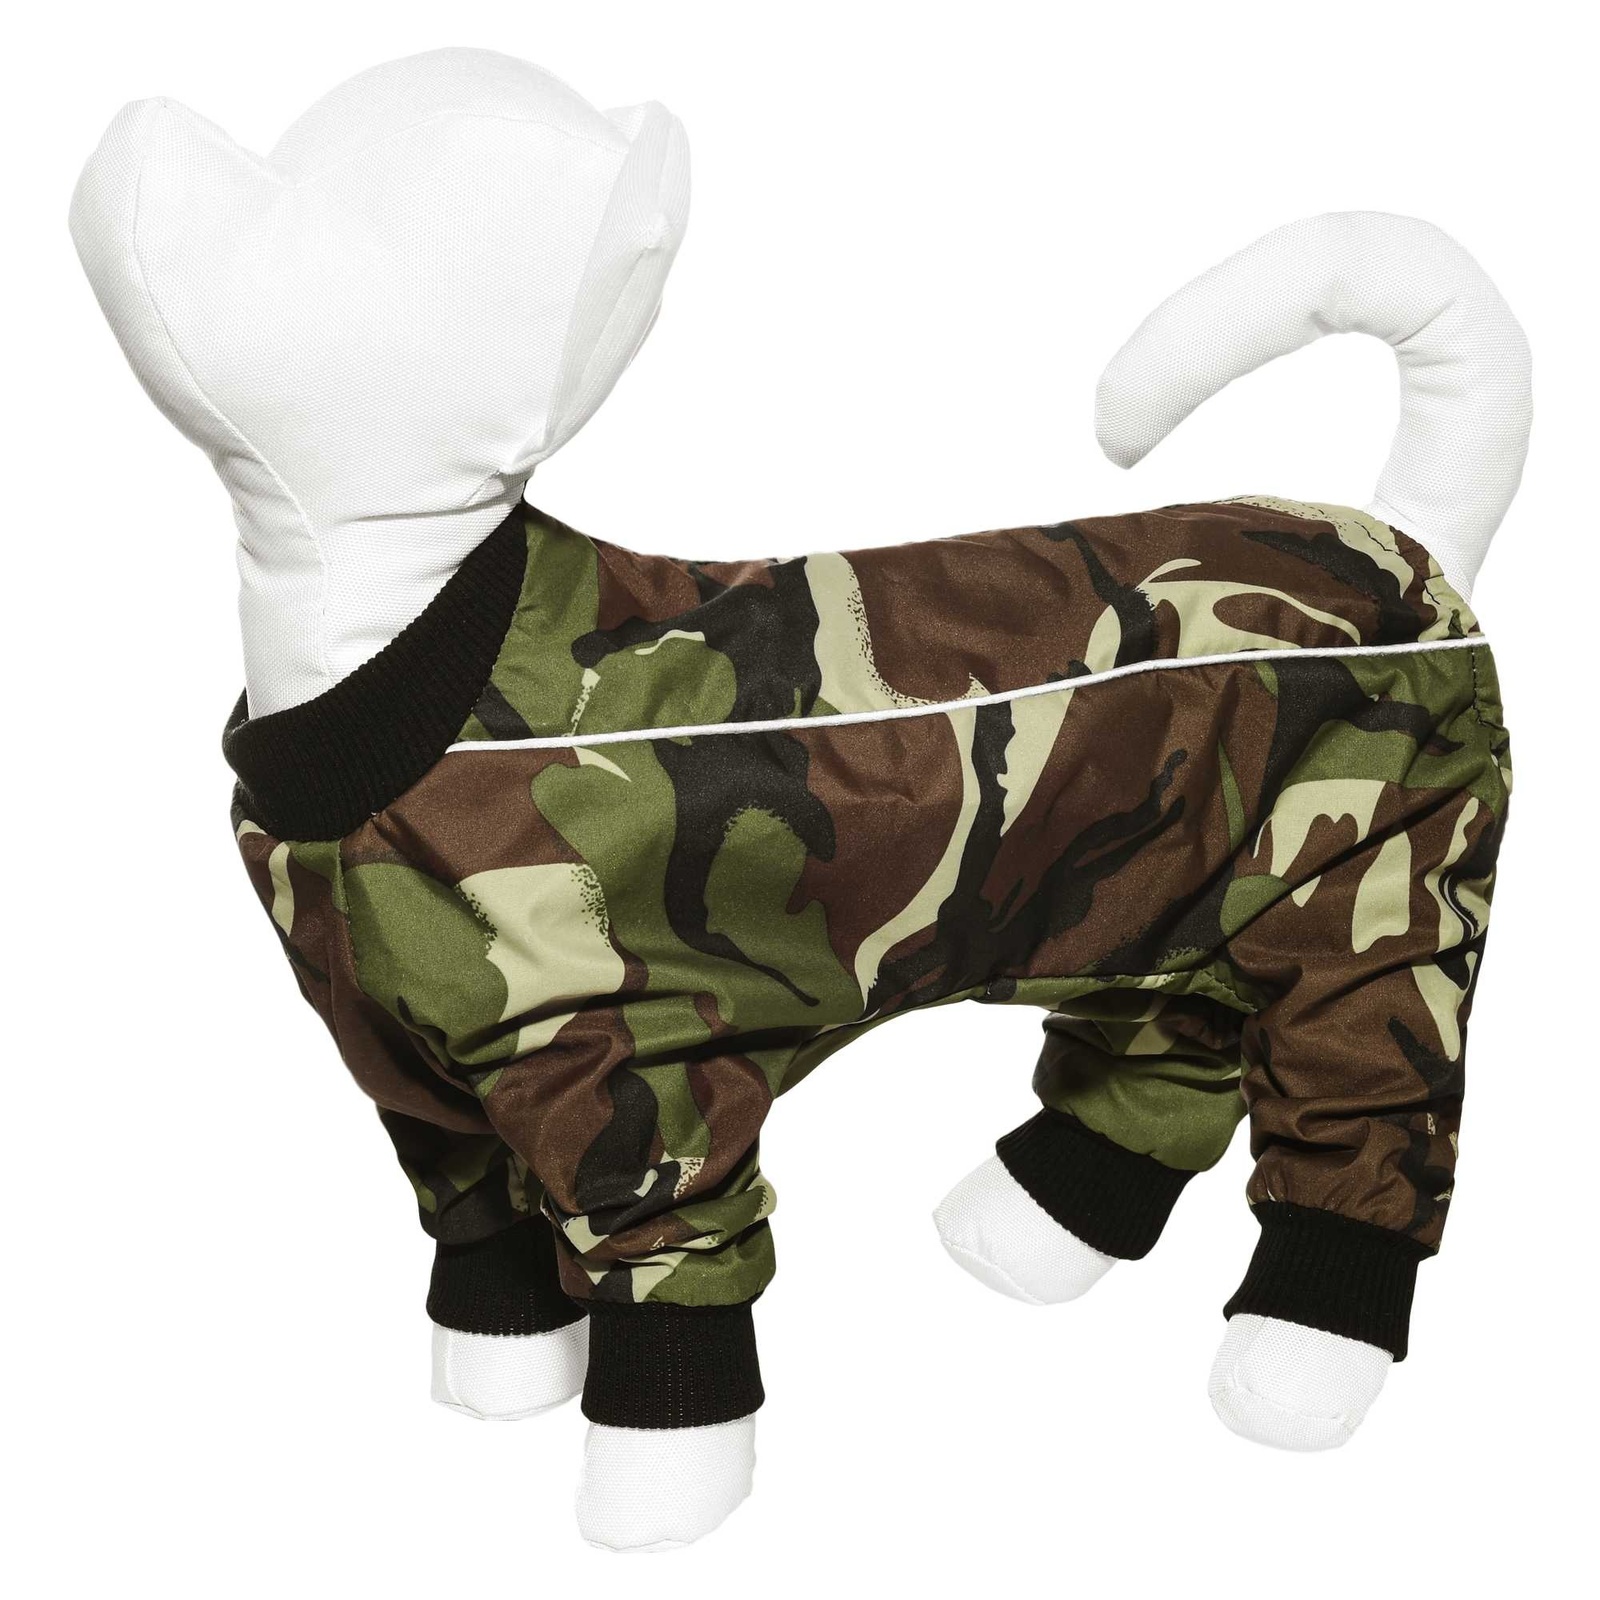 Yami-Yami одежда Yami-Yami одежда комбинезон для собак малых пород, с рисунком камуфляж (100 г) 42446